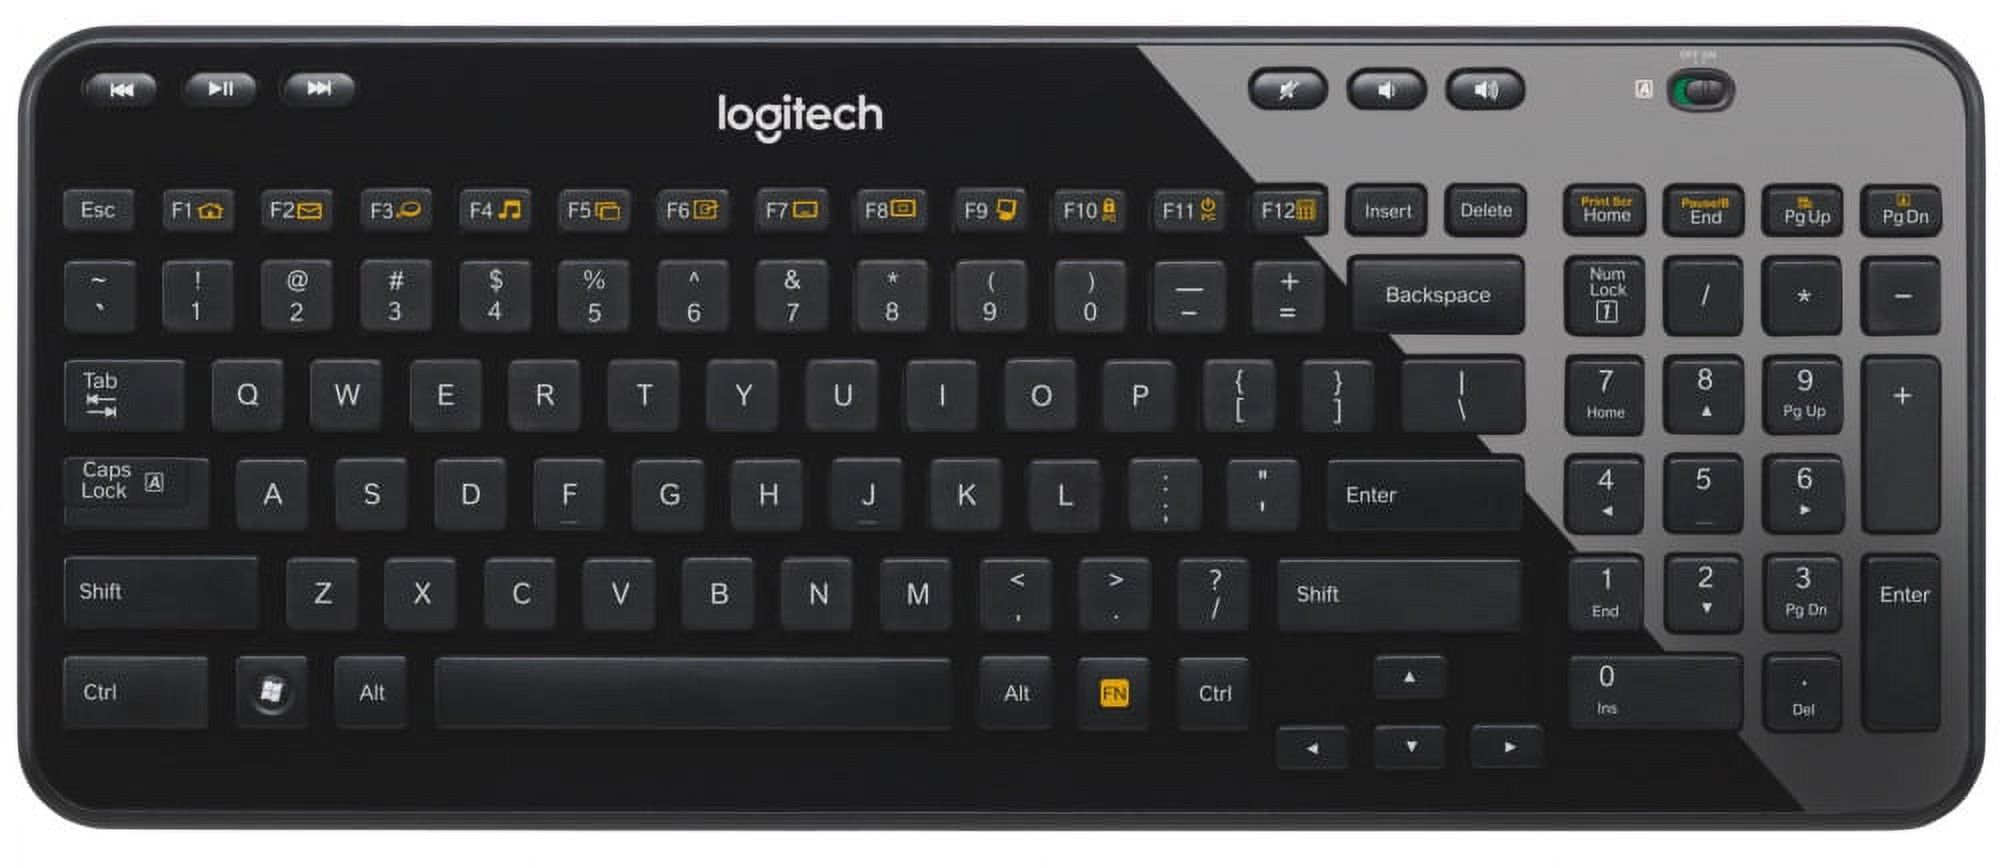 Logitech K360 Wireless Keyboard for Windows, Black - image 2 of 6